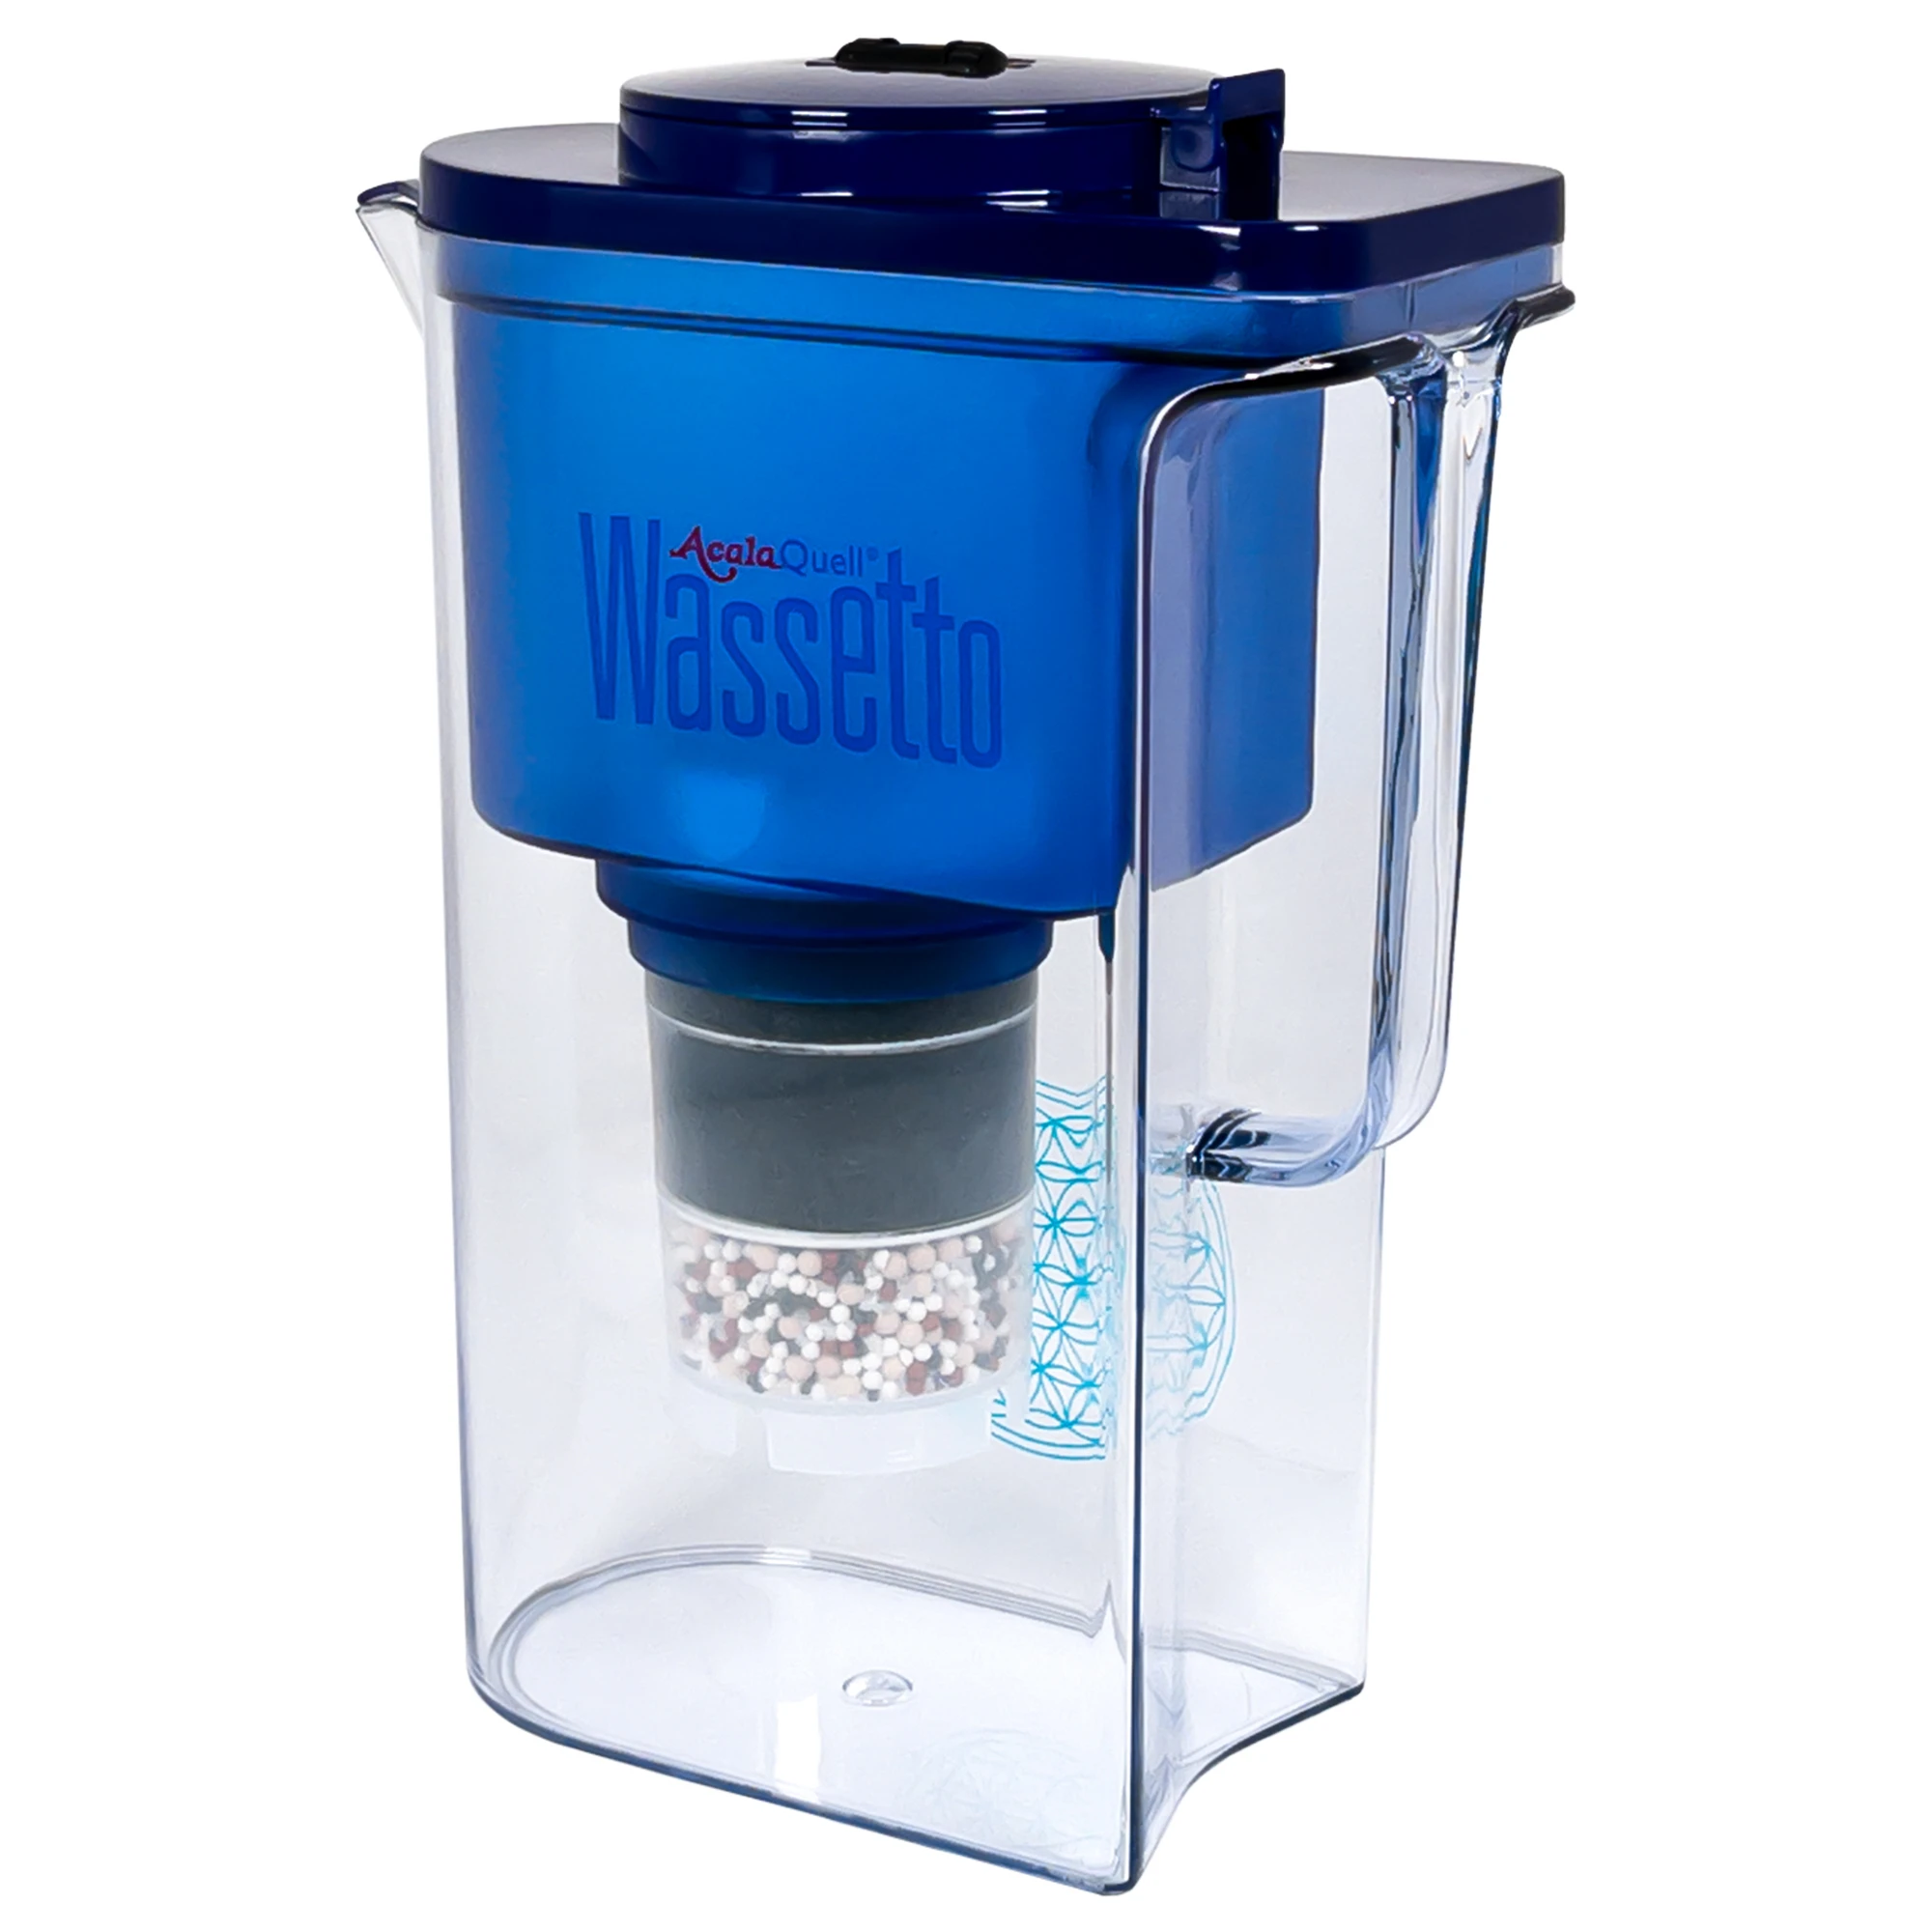 Zu sehen ist der Acala Wassetto Kannen Wasserfilter inklusive einer Filterkartusche und einem Mikroschwamm mit Deckel in dunkelblau vor weißem Hintergrund. Man schaut schräg auf die Front des Filters und sieht den Aufdruck AcalaQuell Wassetto.